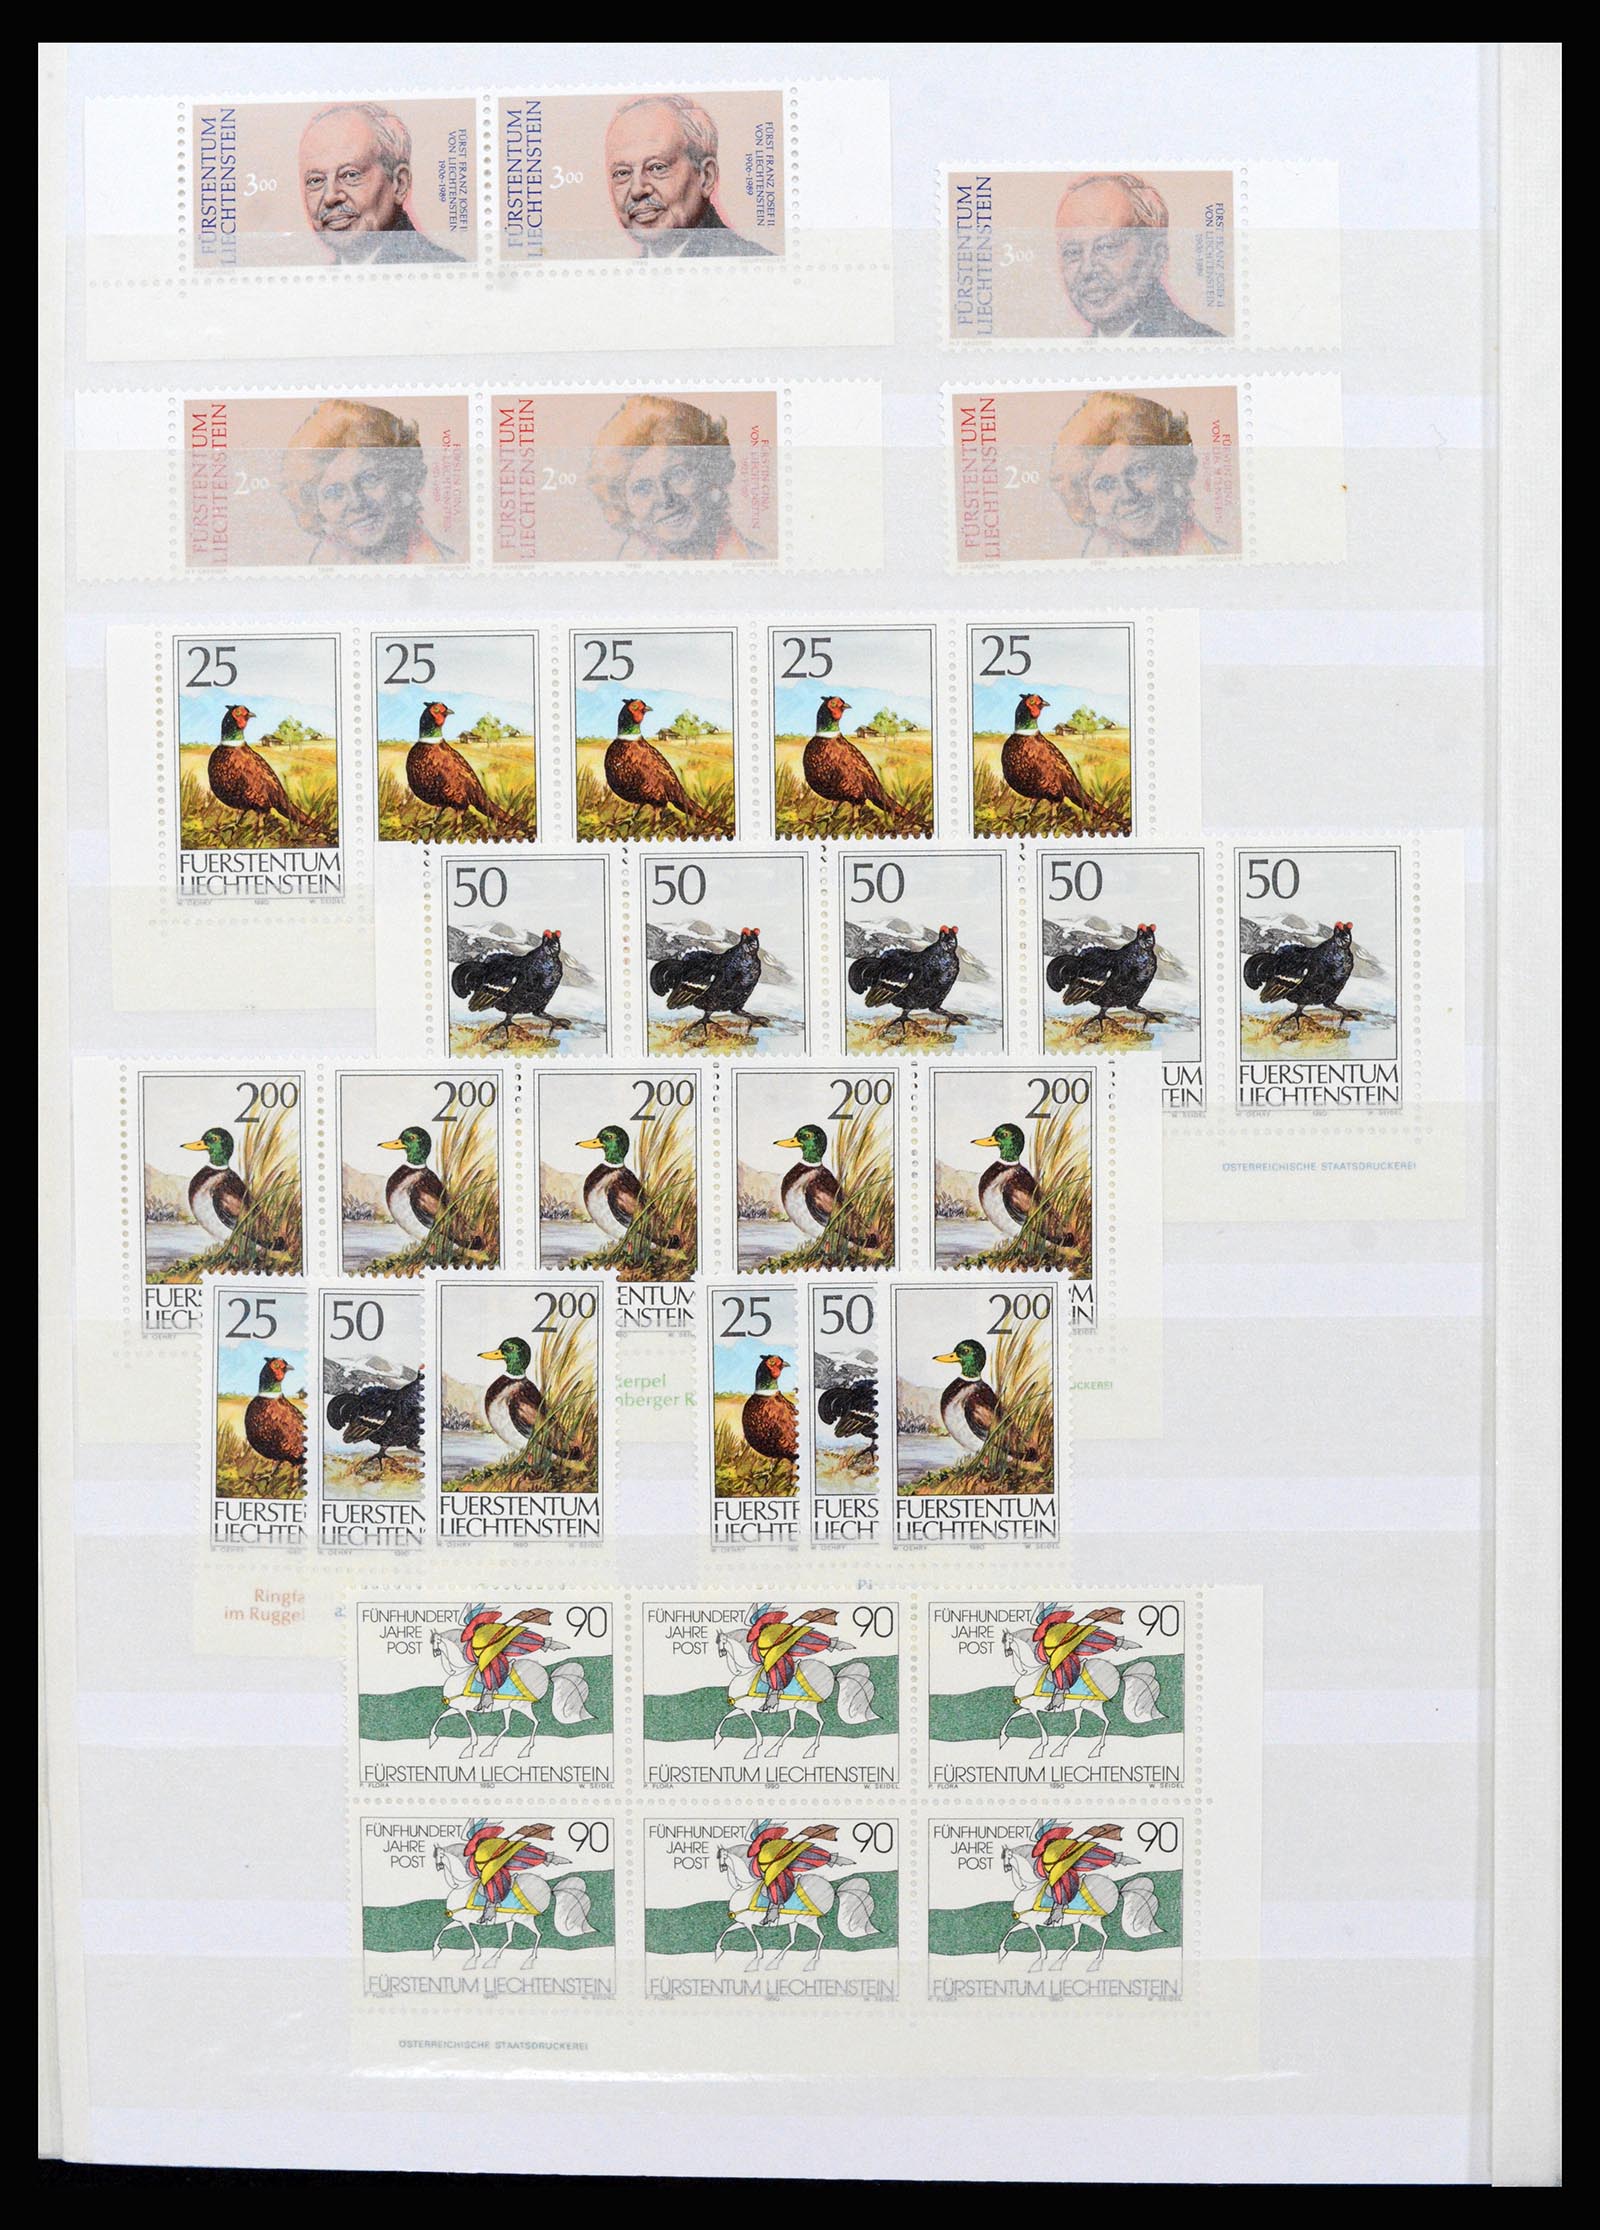 37261 102 - Stamp collection 37261 Liechtenstein 1961-1995.